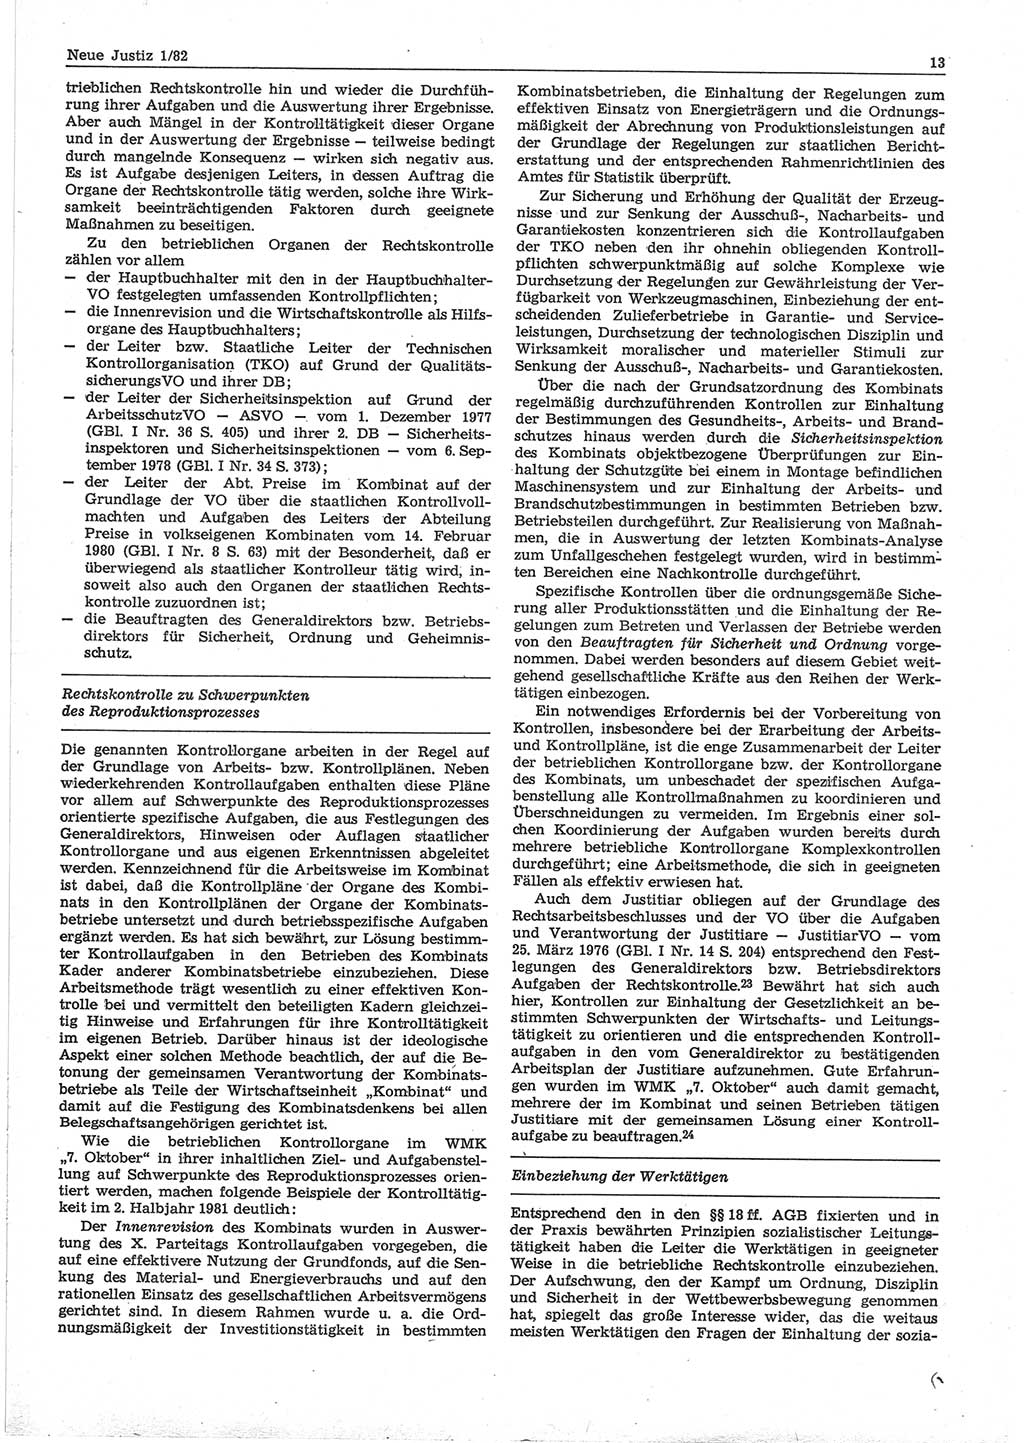 Neue Justiz (NJ), Zeitschrift für sozialistisches Recht und Gesetzlichkeit [Deutsche Demokratische Republik (DDR)], 36. Jahrgang 1982, Seite 13 (NJ DDR 1982, S. 13)